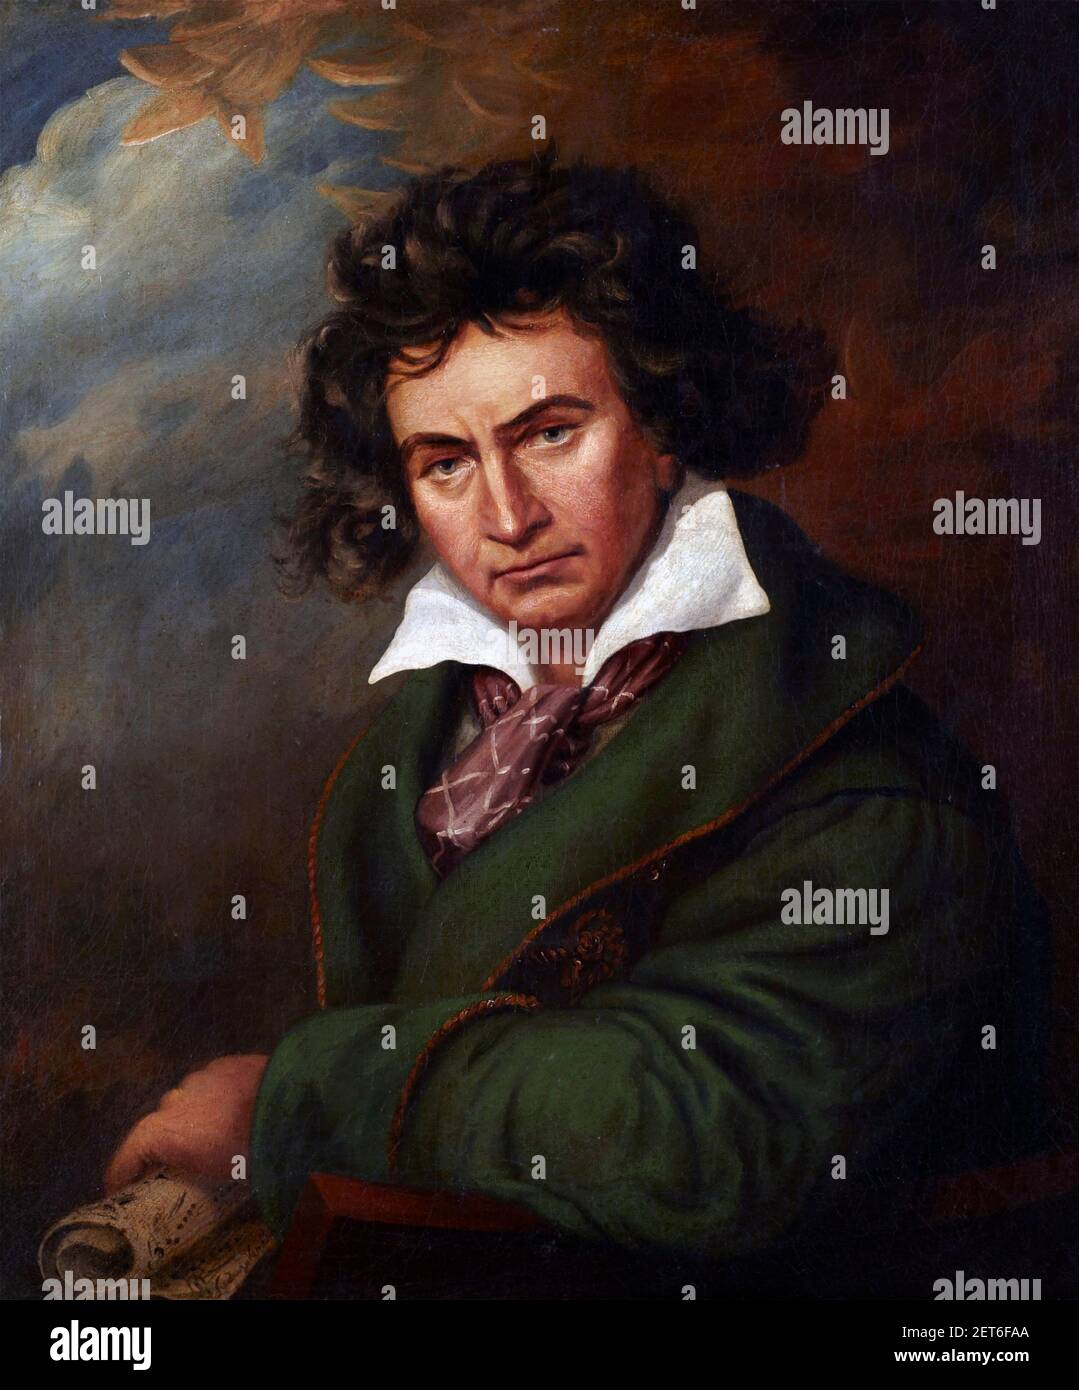 Beethoven; Portrait des deutschen Komponisten Ludwig van Beethoven (1770-1827) Malerei im Stil von Joseph Karl Stieler, nach 1819 Stockfoto